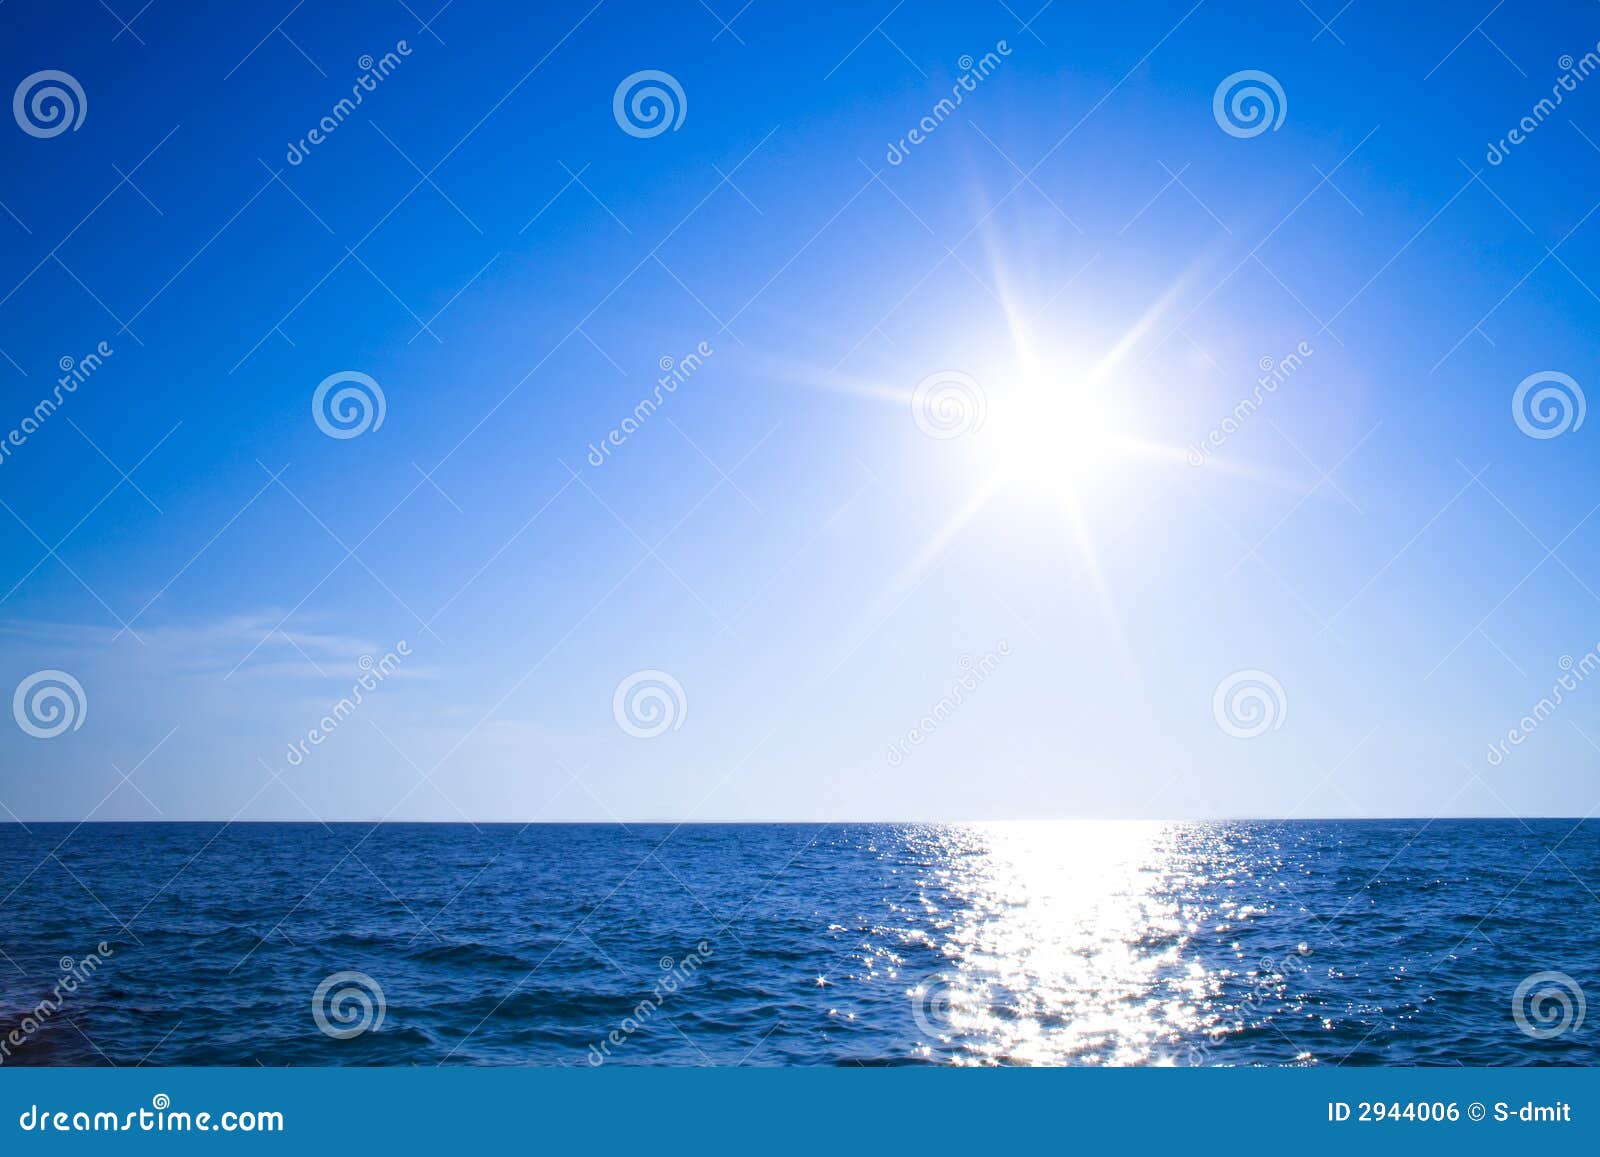 sun, sky and ocean